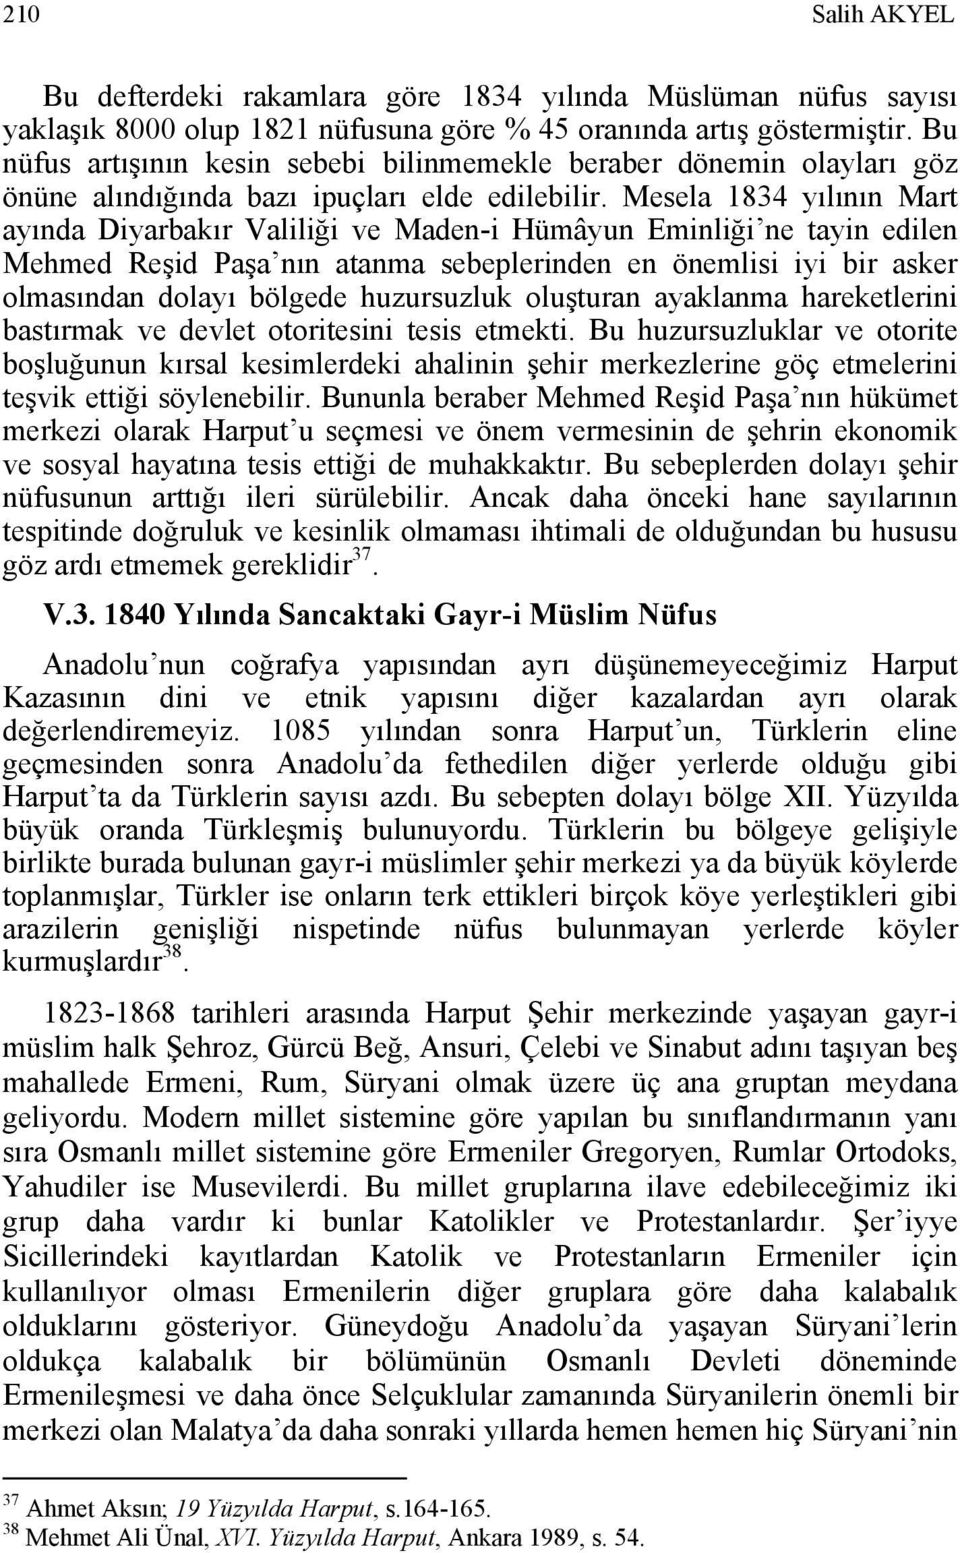 Mesela 1834 yılının Mart ayında Diyarbakır Valiliği ve Maden-i Hümâyun Eminliği ne tayin edilen Mehmed Reşid Paşa nın atanma sebeplerinden en önemlisi iyi bir asker olmasından dolayı bölgede